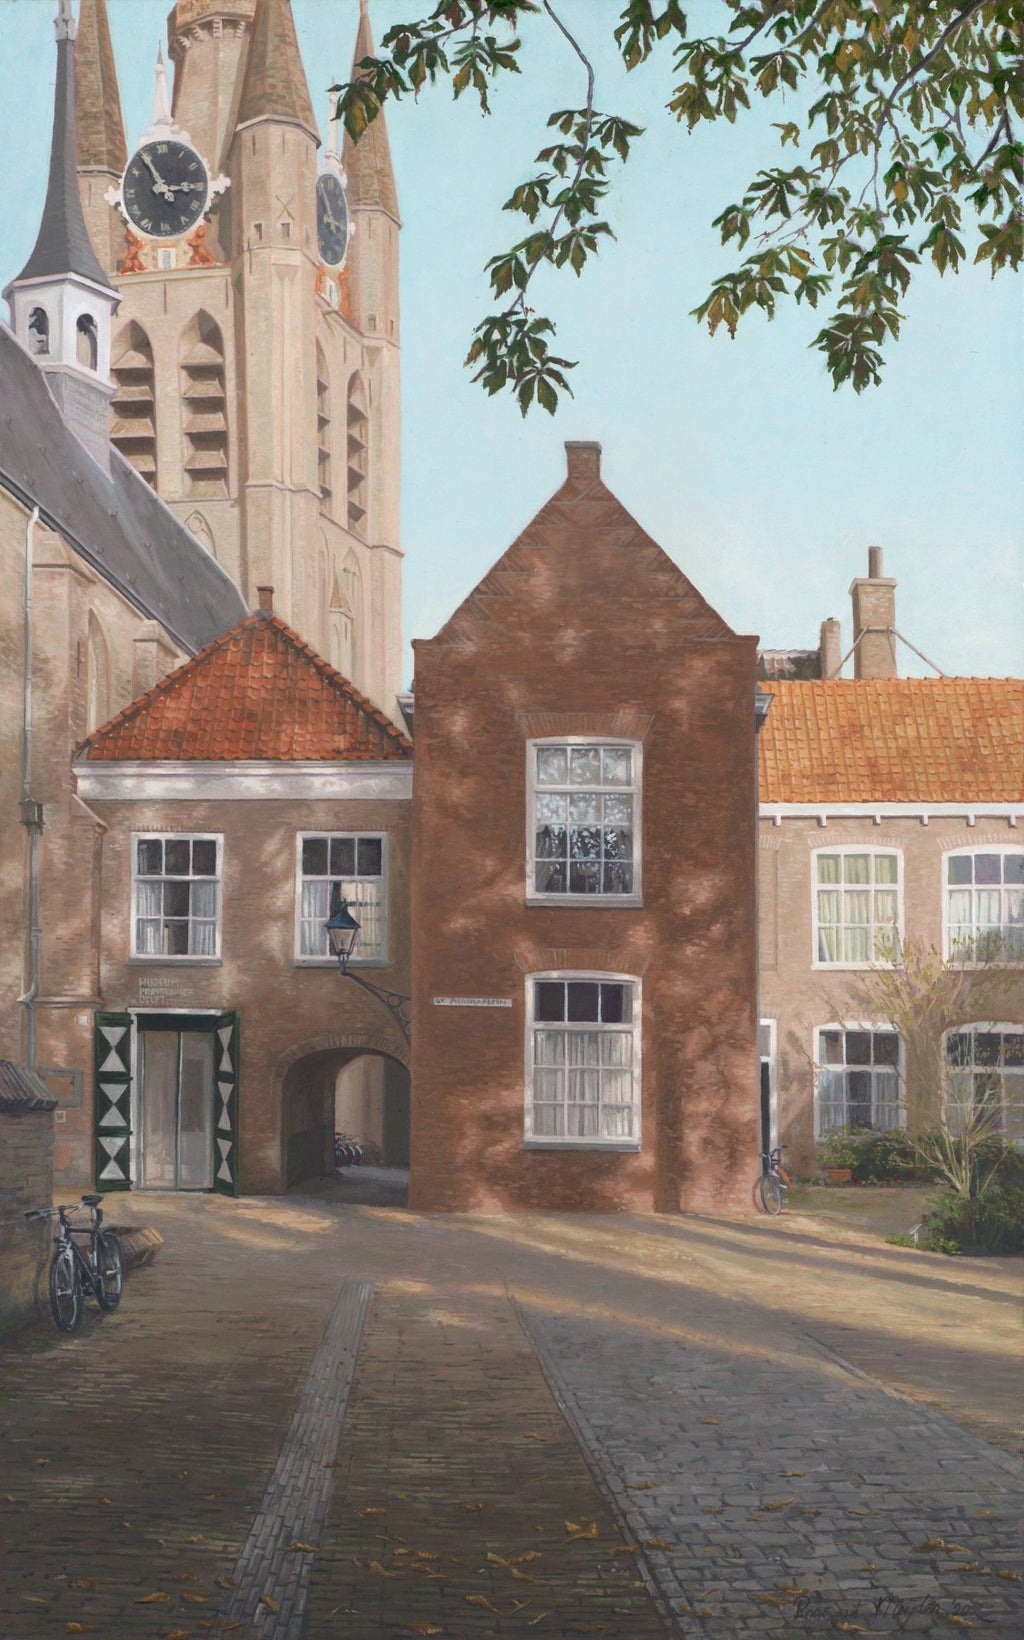 Prinsenhof Delft (40 x 25cm) - ArtFusion.nl